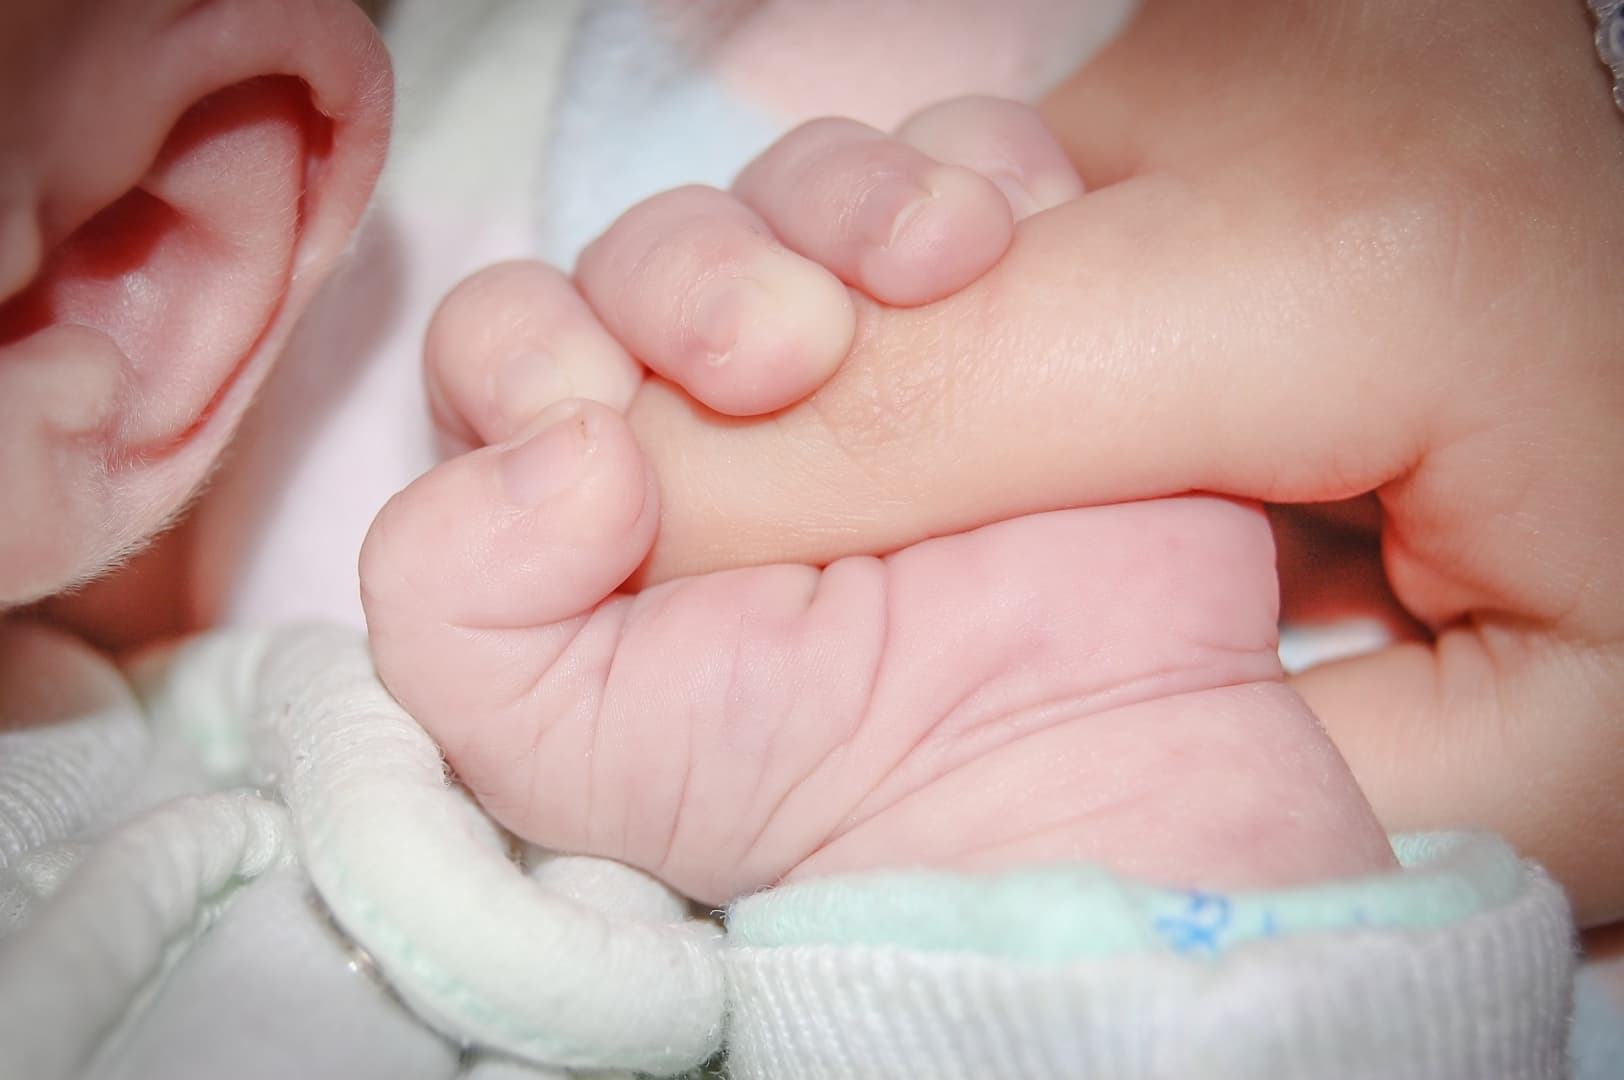 Az orvosok alig akartak hinni a szemüknek – rekordnagyságú babának adott életet egy nő a pozsonyi kórházban